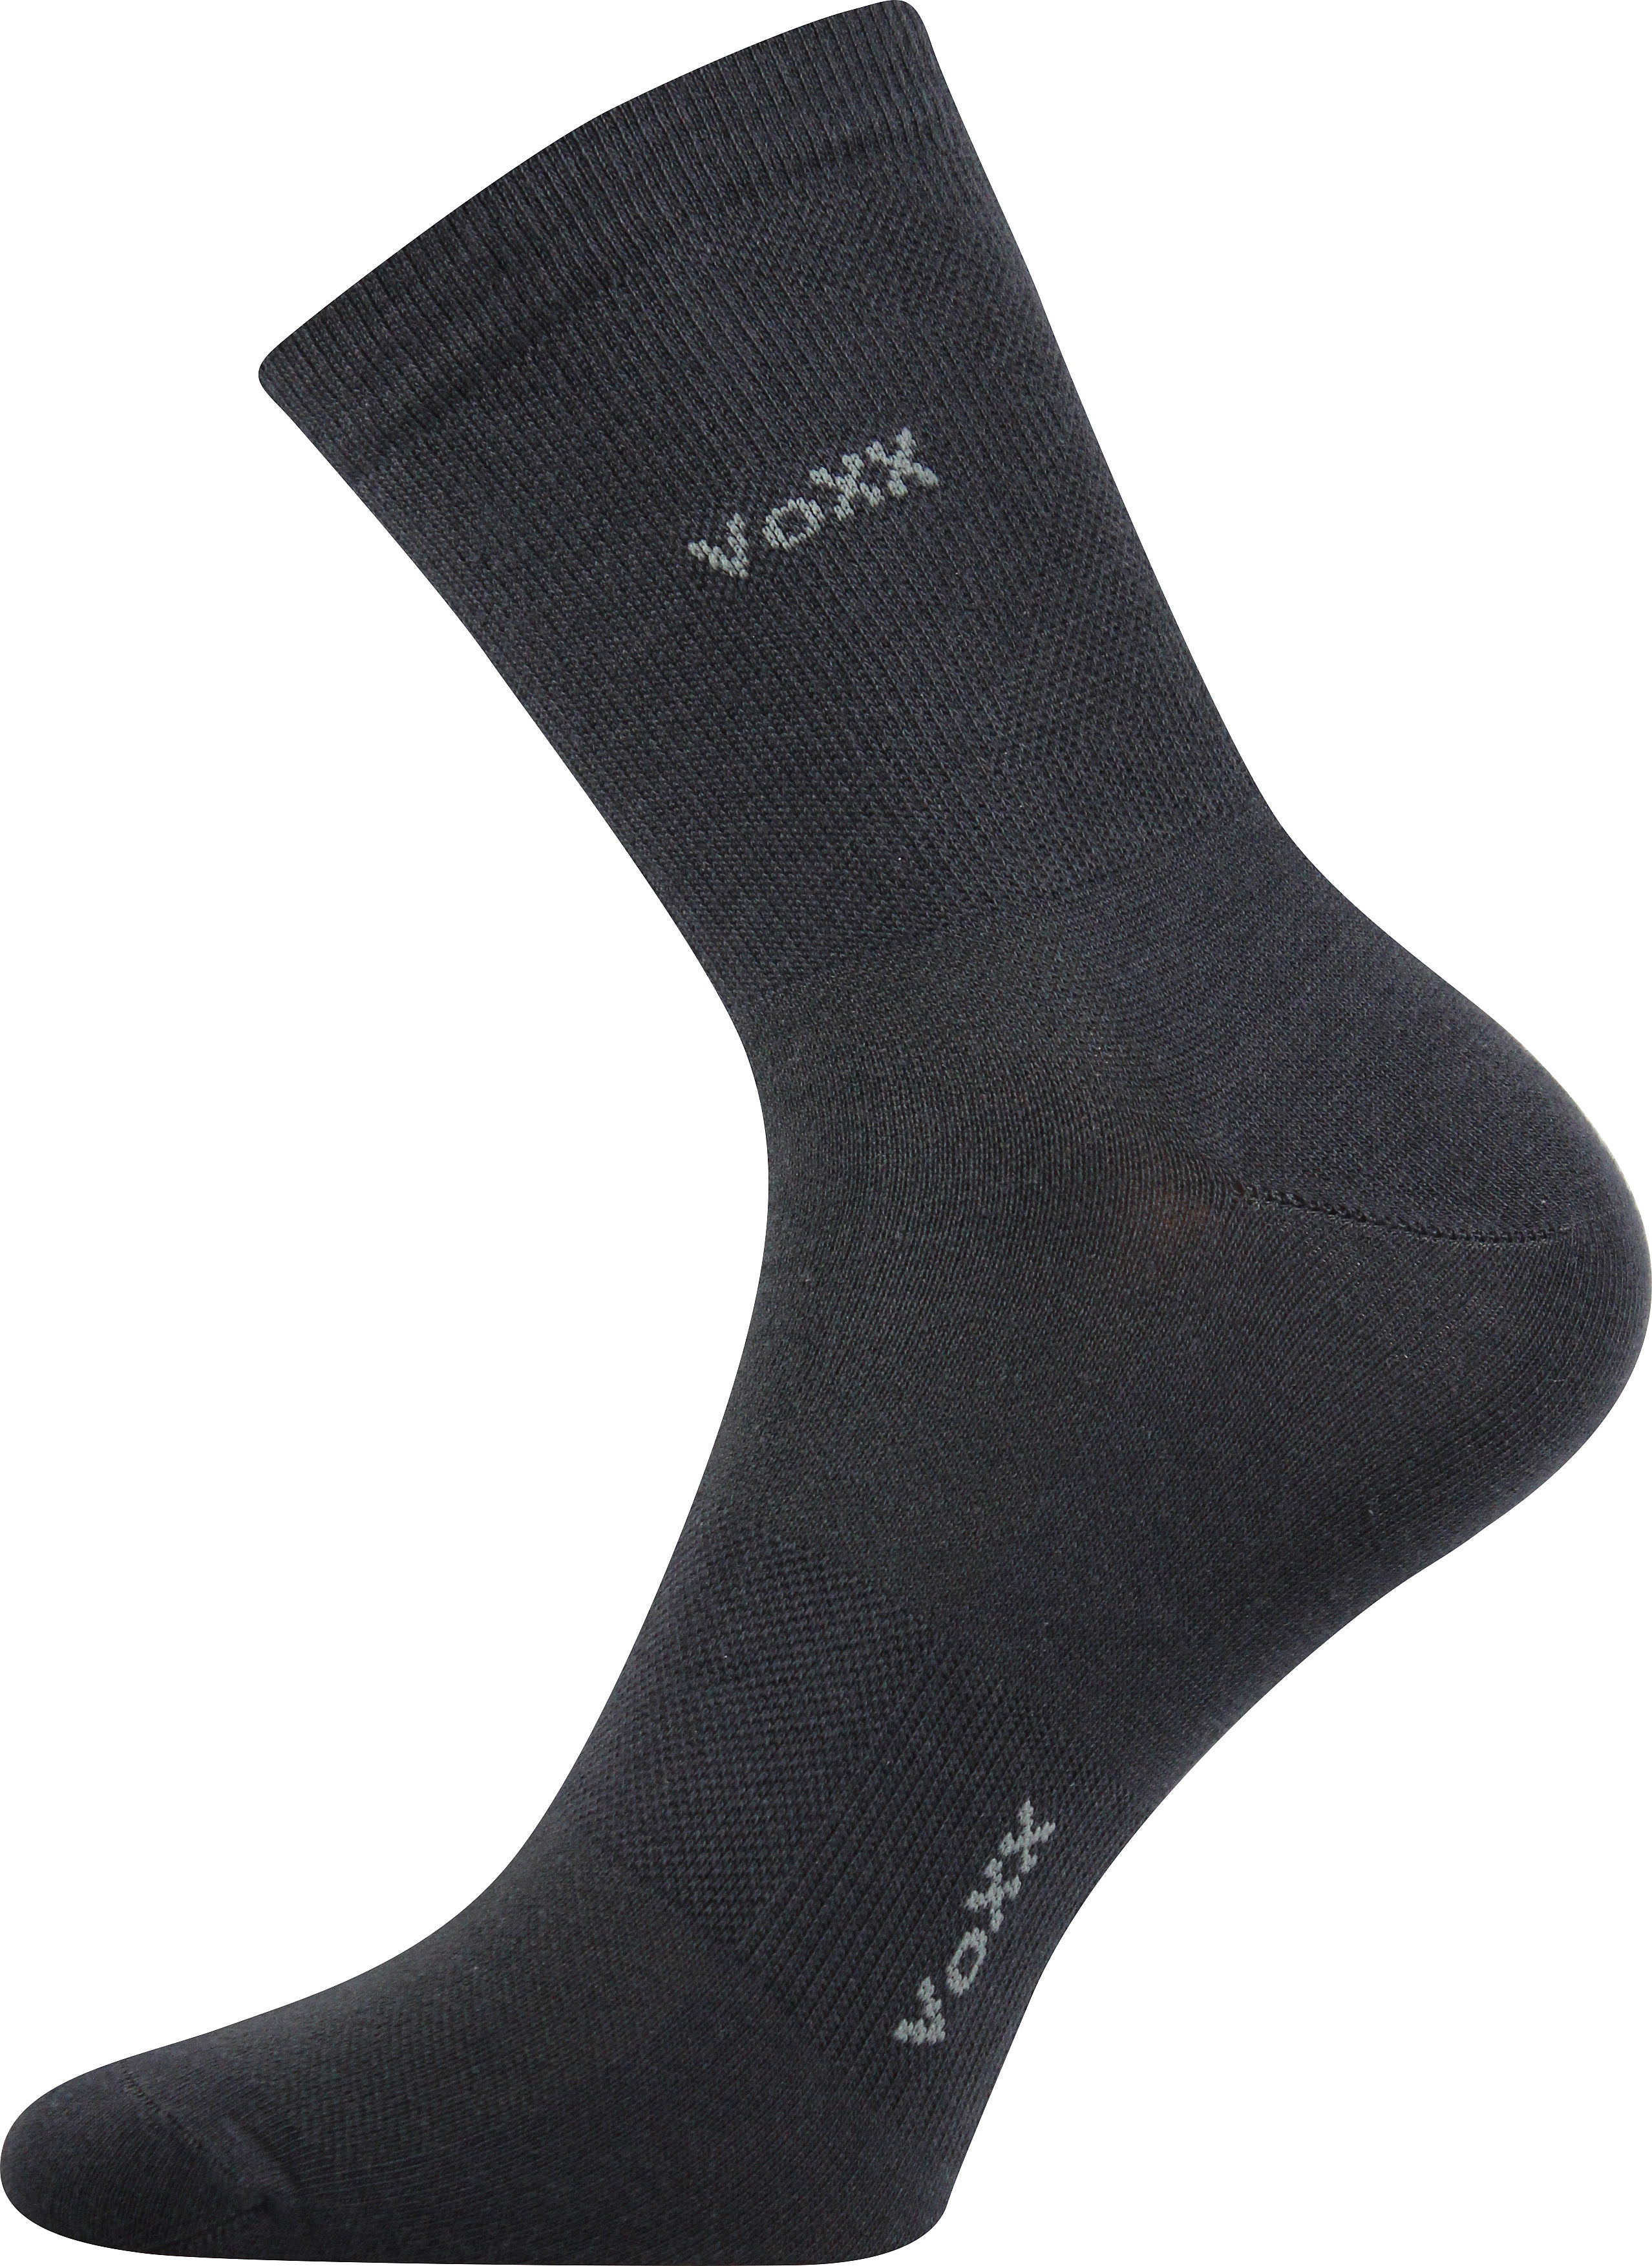 Ponožky sportovní Voxx Horizon - tmavě šedé, 43-46